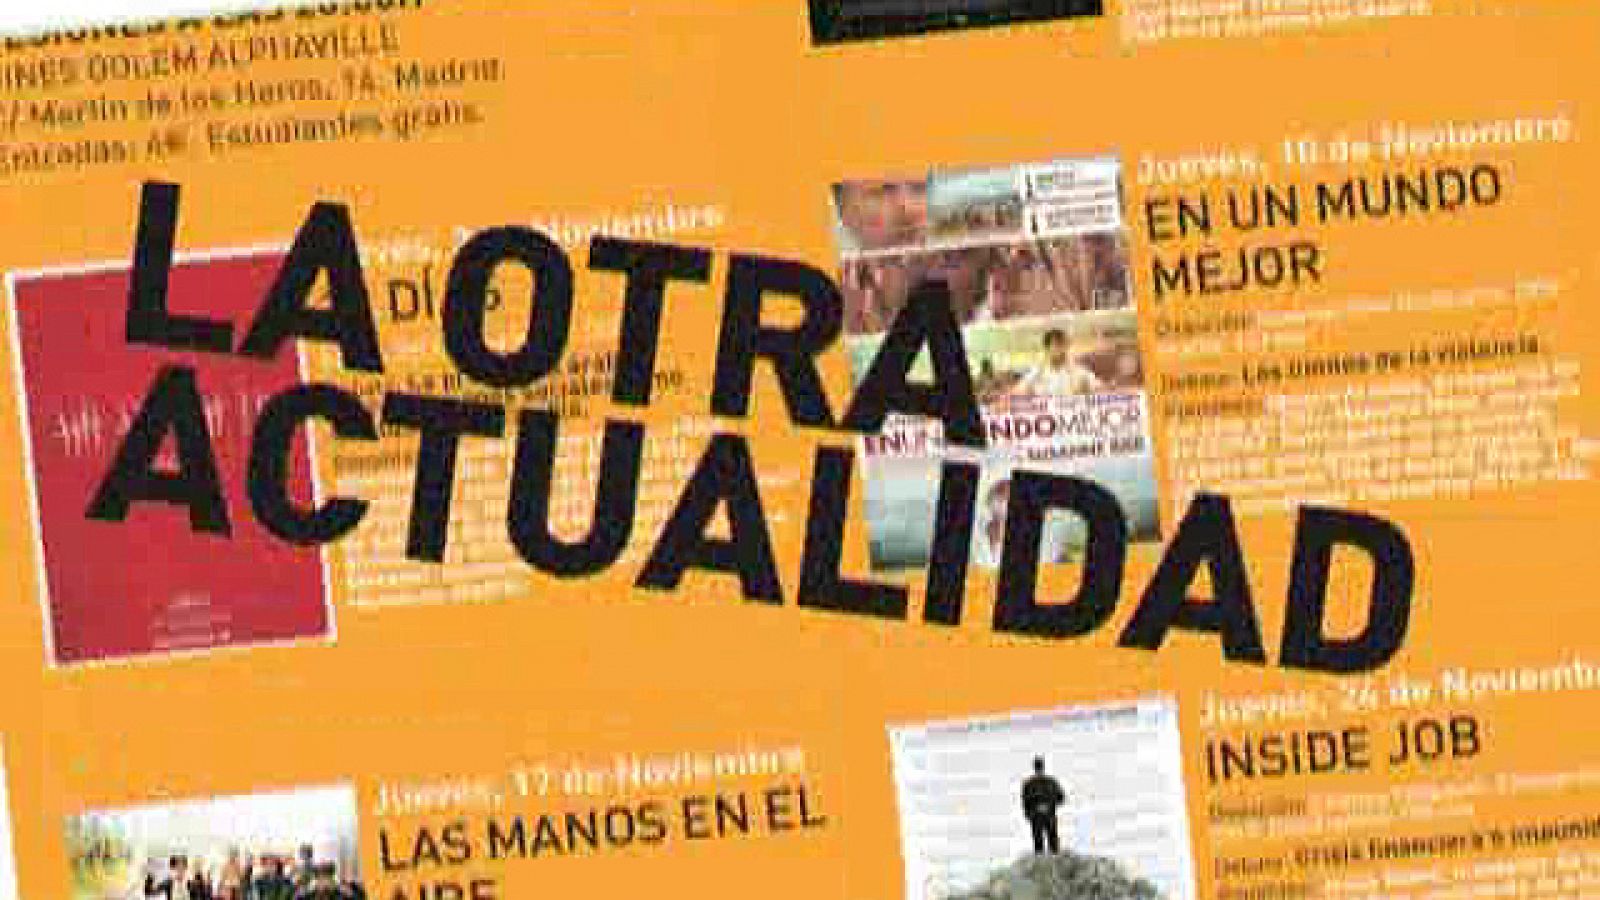 UNED: Cine Foro "LA OTRA ACTUALIDAD". | RTVE Play